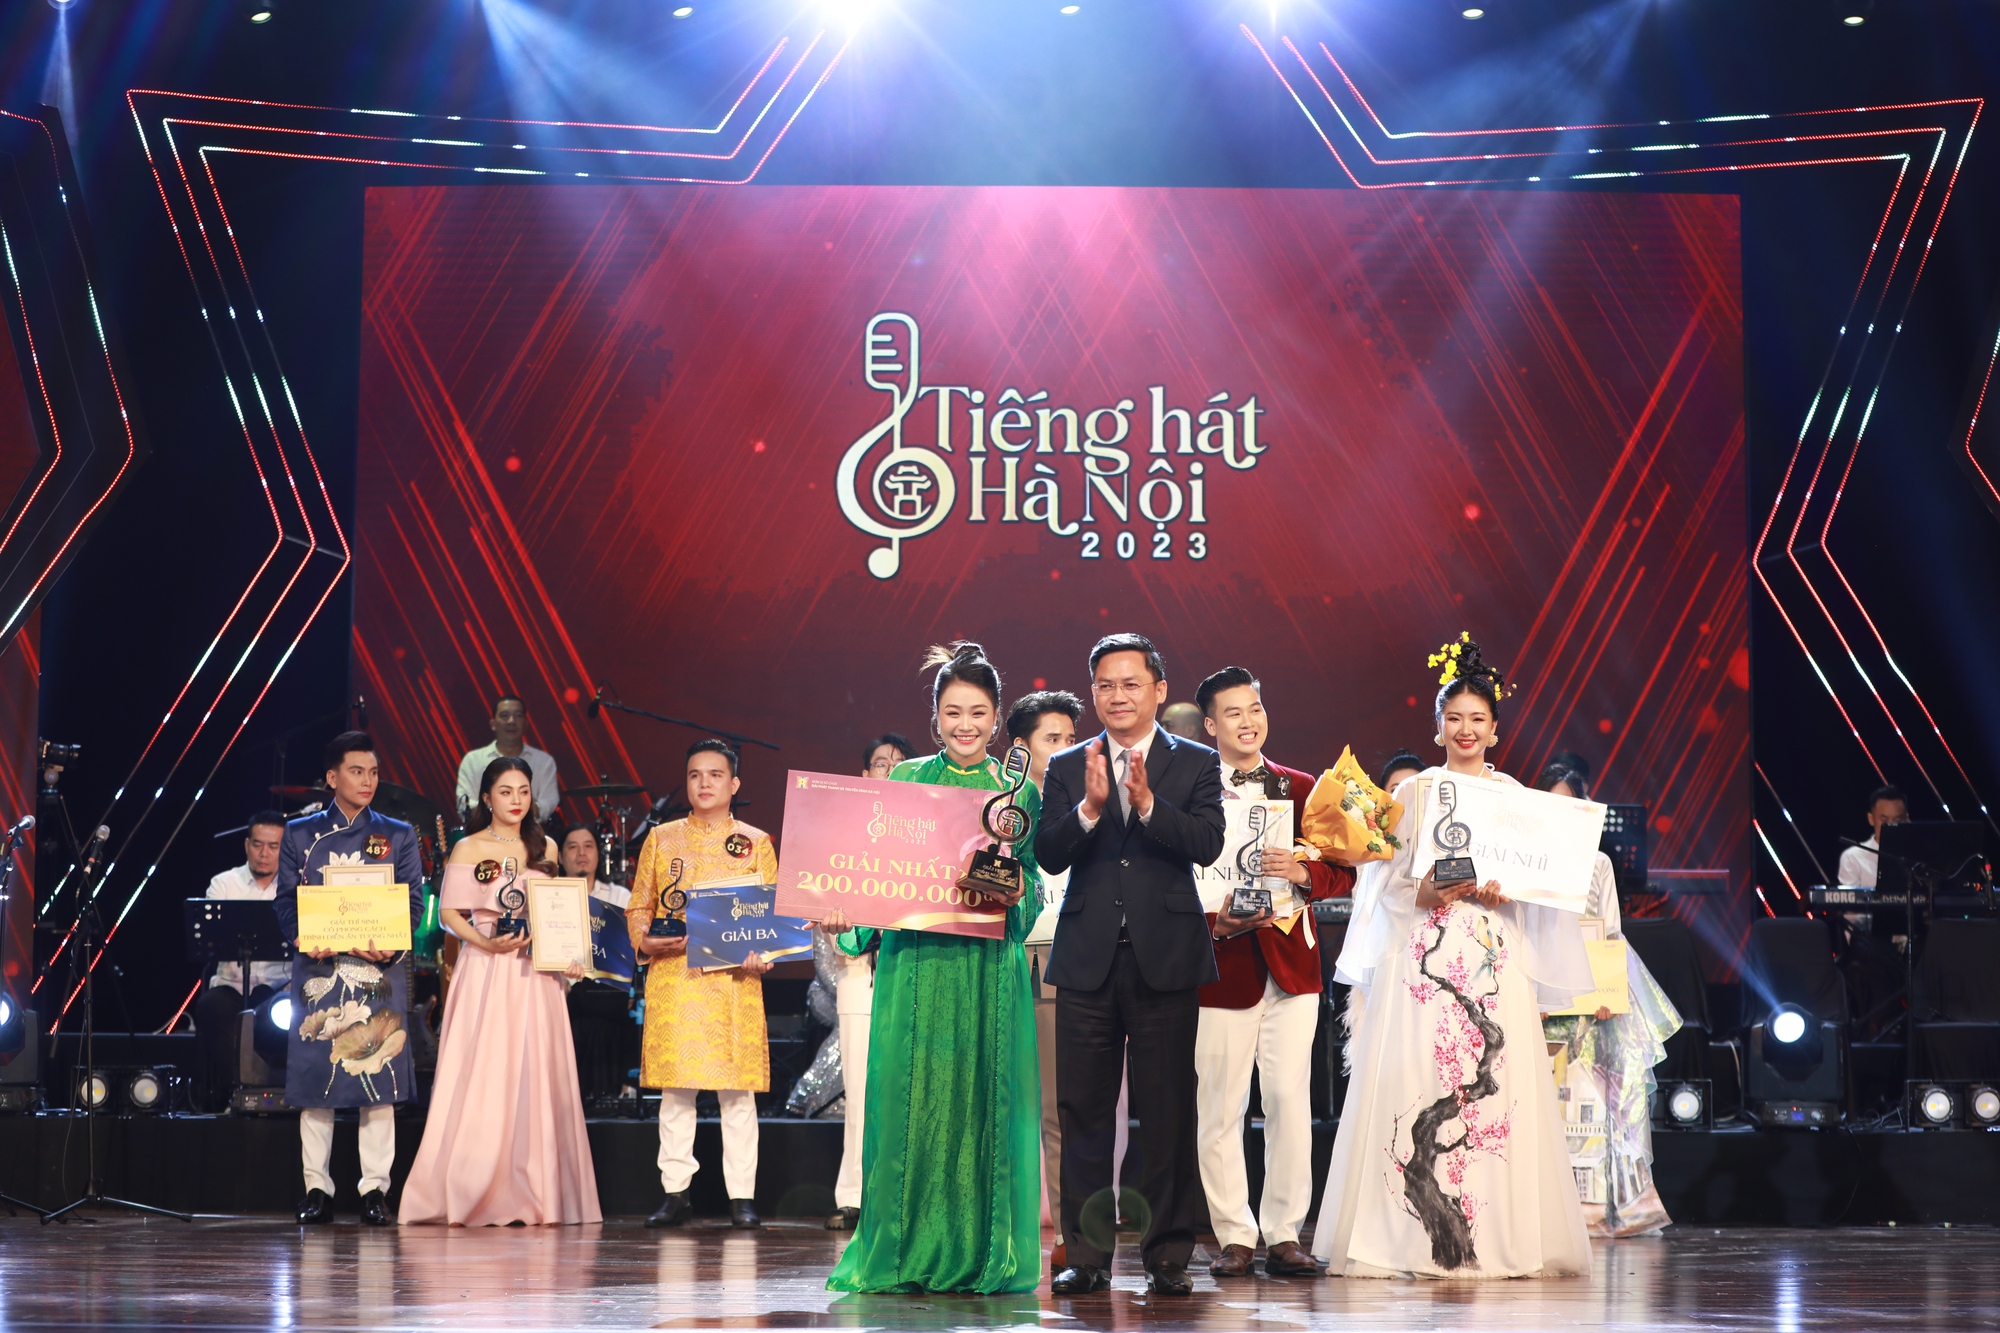 Điều bất ngờ về cô gái 18 tuổi đến từ Hà Tĩnh đoạt ngôi Quán quân Tiếng hát Hà Nội 2023 - Ảnh 1.